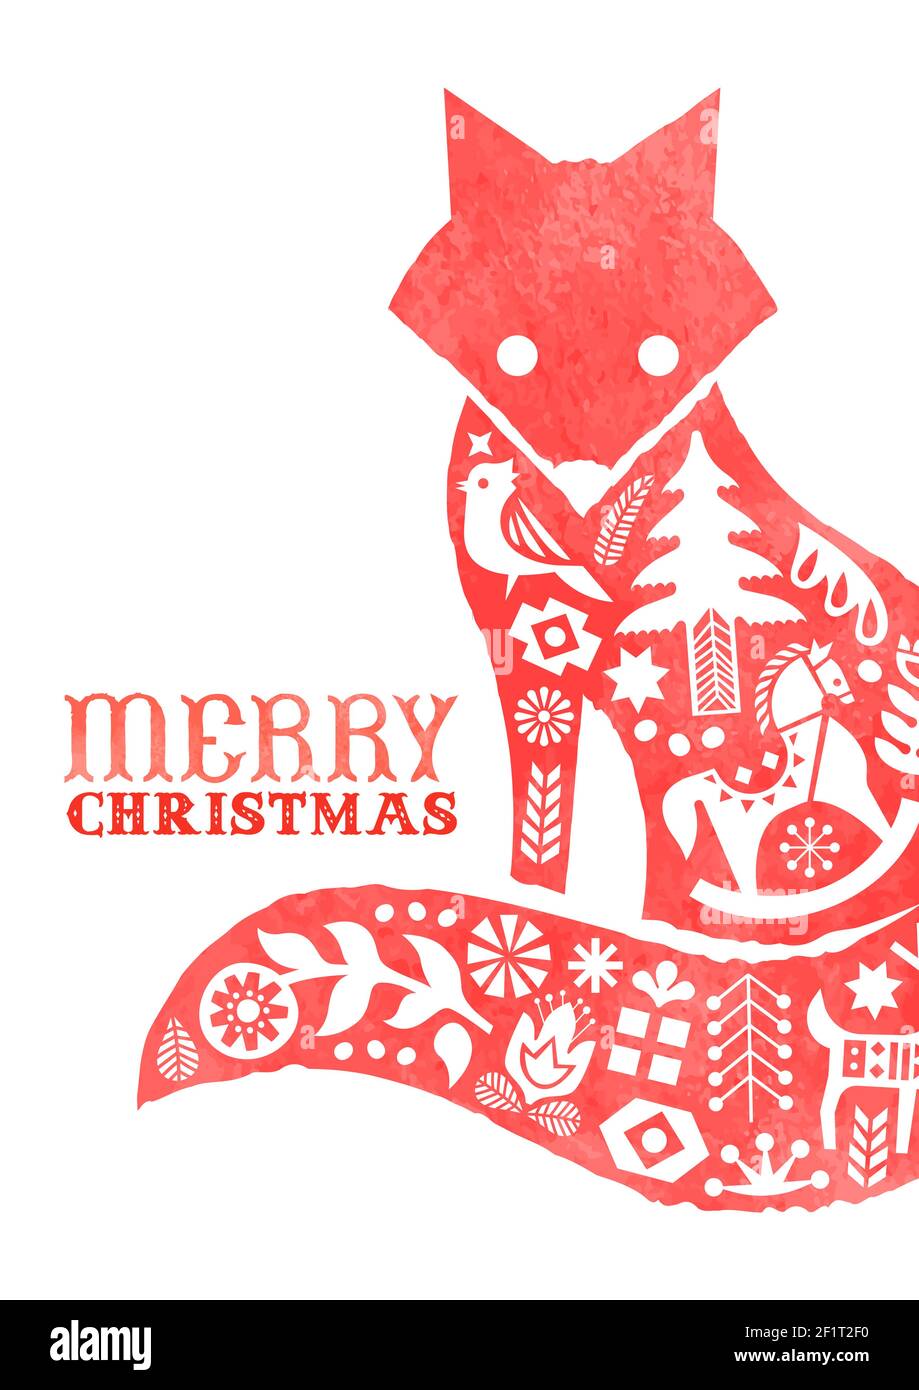 Frohe Weihnachten Grußkarte, vintage skandinavische Kunst Dekoration innen Aquarell Fuchs Tier für Urlaub Einladung oder saisonale Grüße. Enthält Stock Vektor